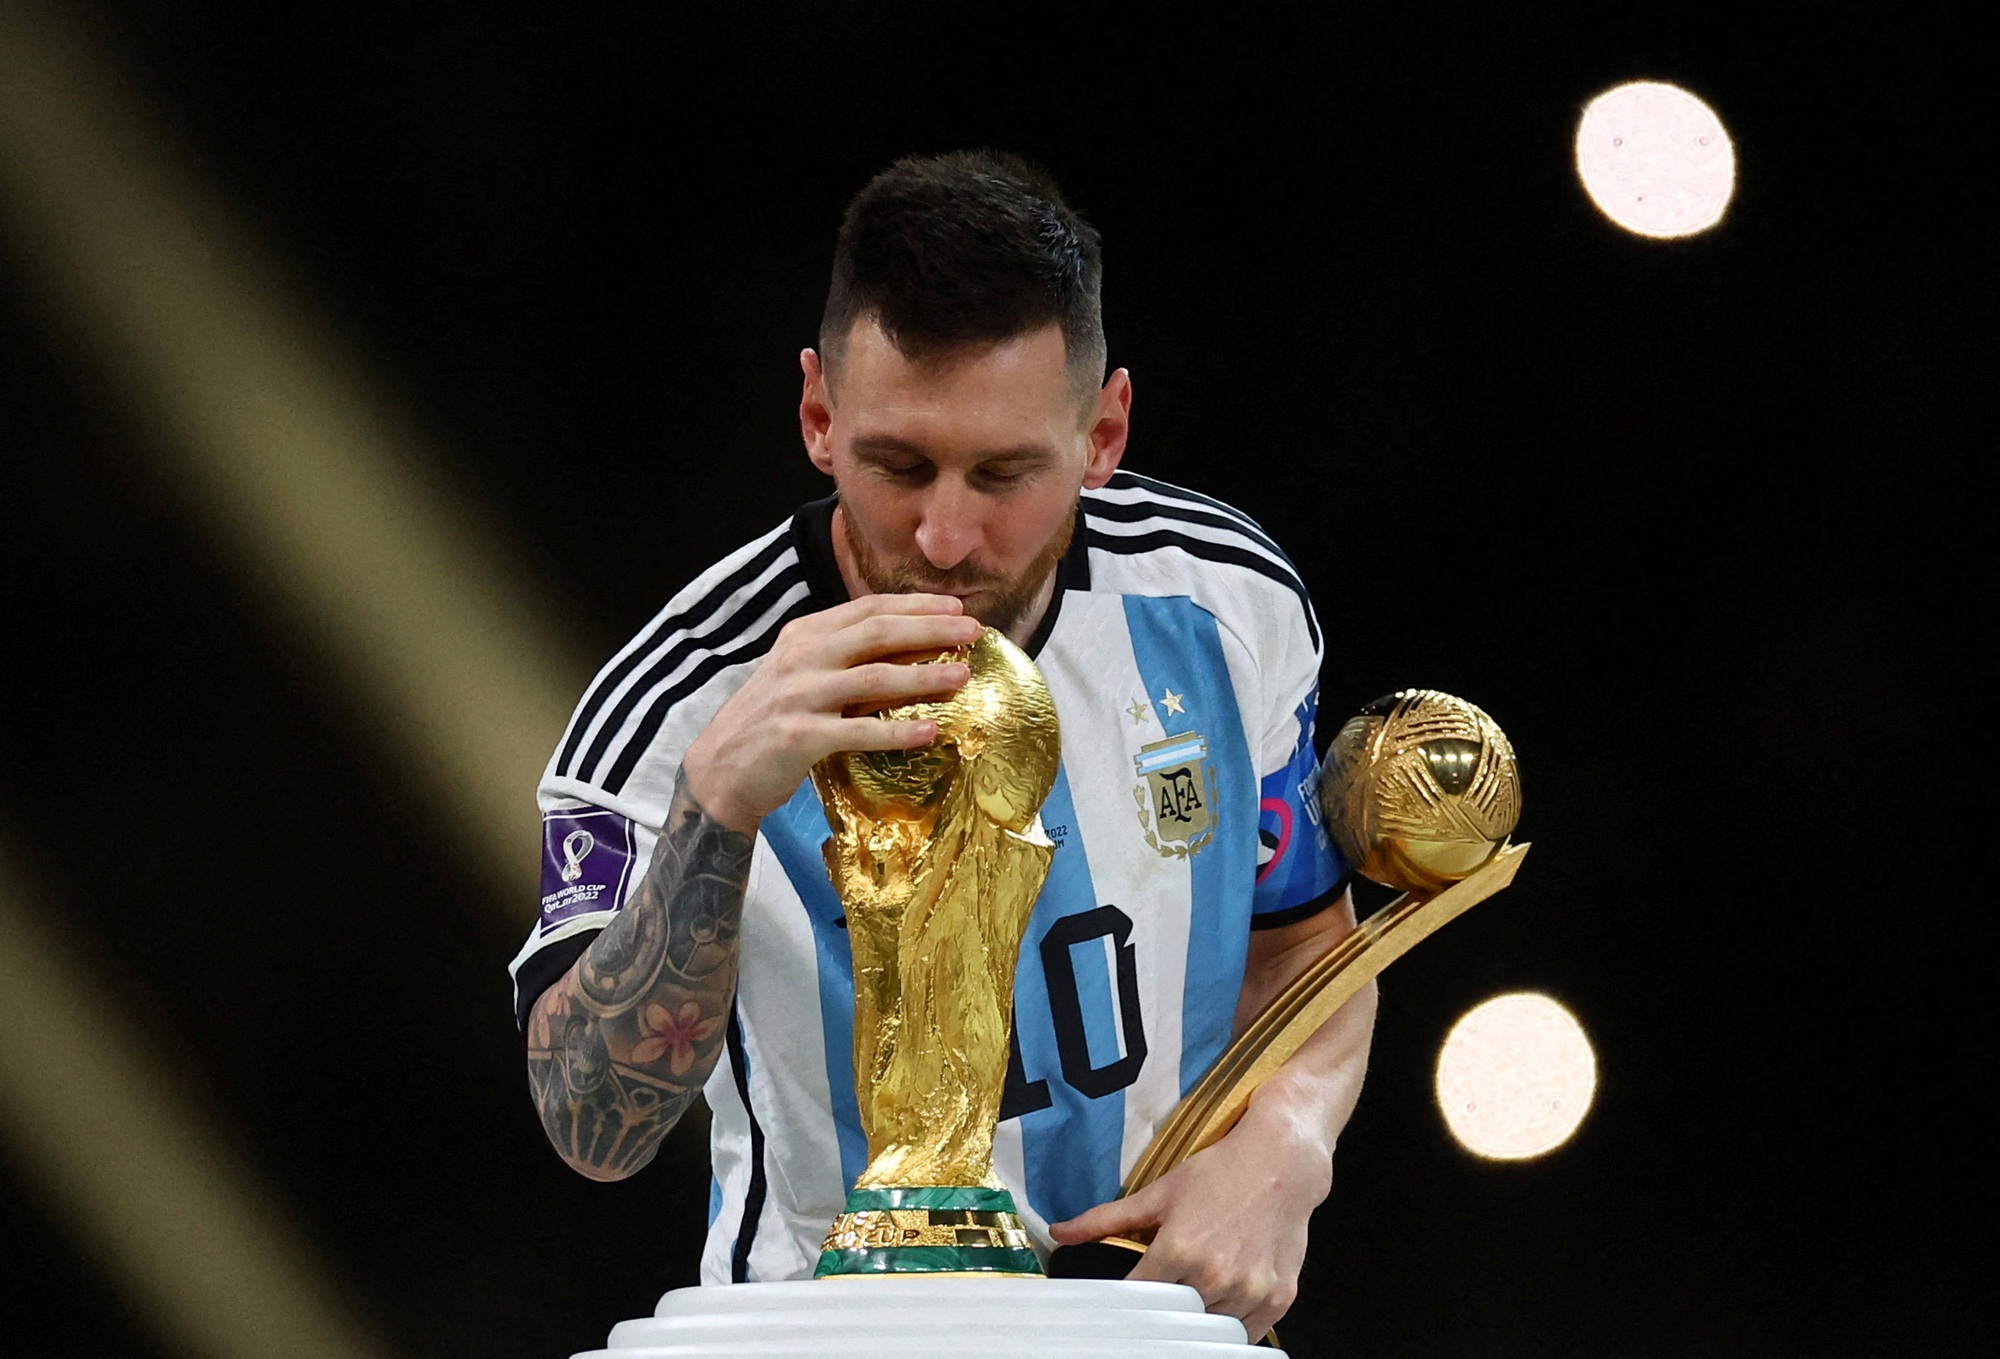 Messi muốn dự World Cup 2026, thừa nhận MLS là giải "nhỏ"